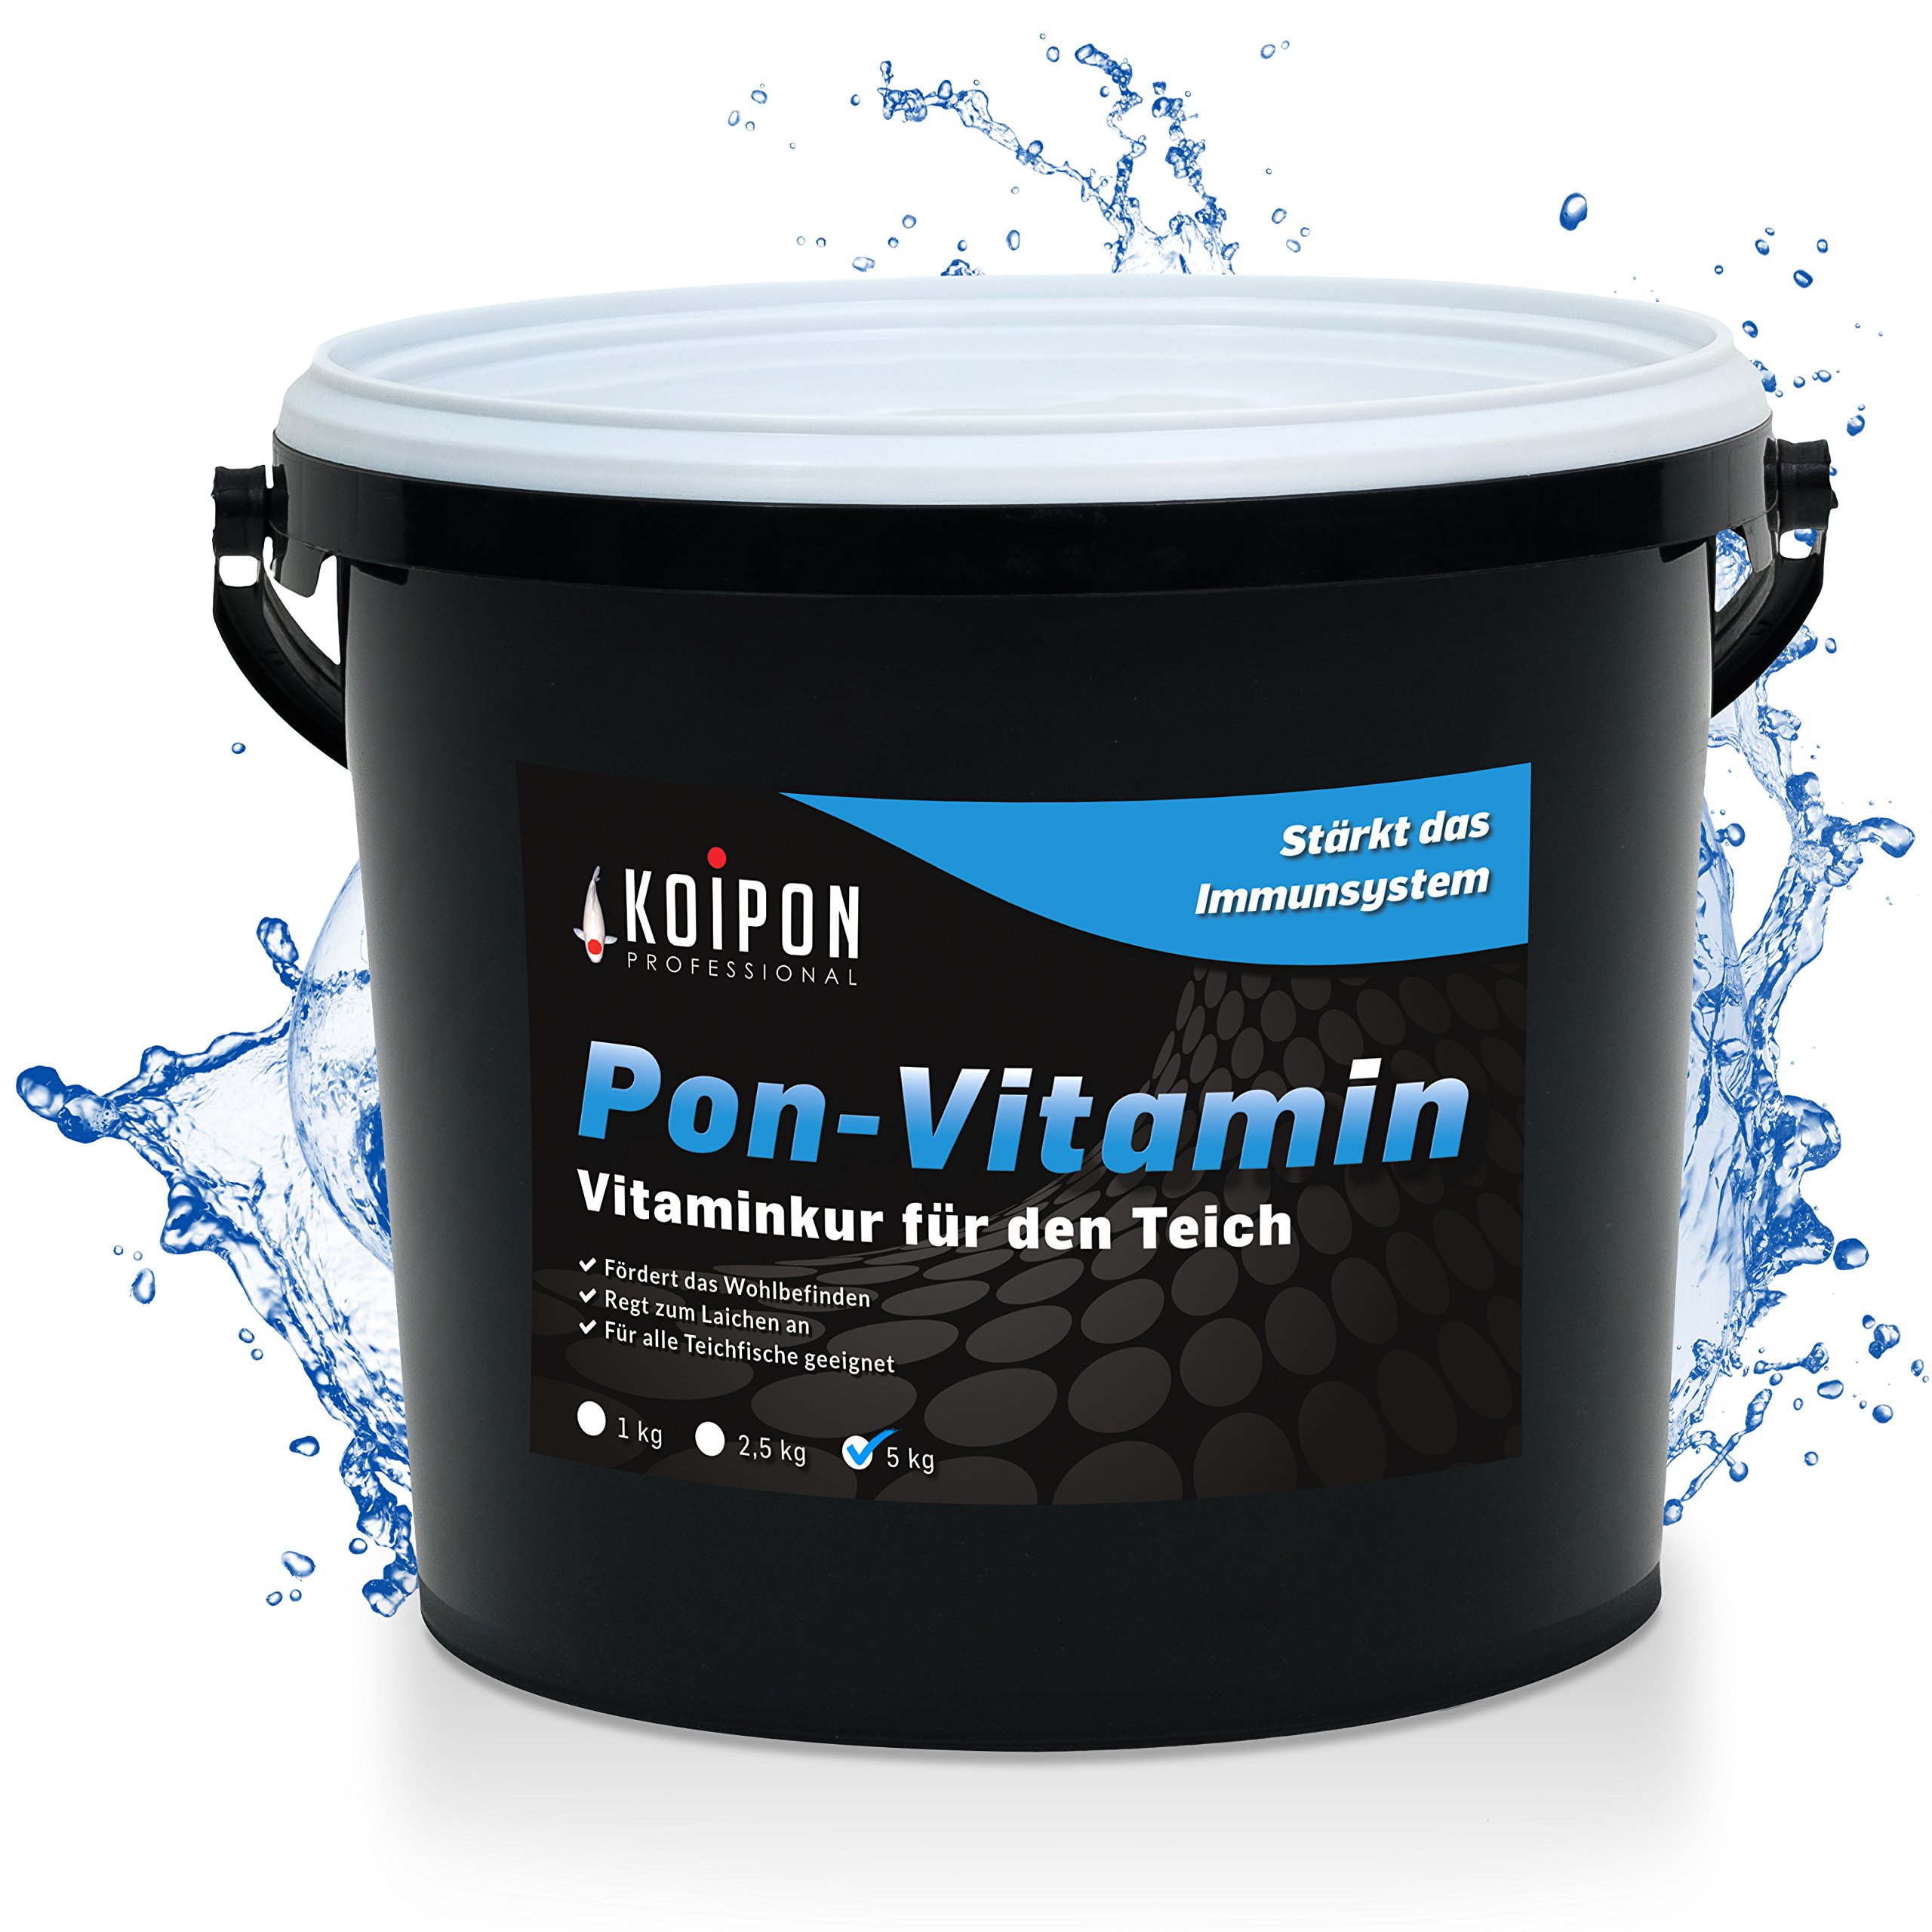 KOIPON Pon-Vitamin 5kg, Vitaminkur mit wertvollen Mineralien für gesunde Fische im Fischteich und japanische Koi im Gartenteich